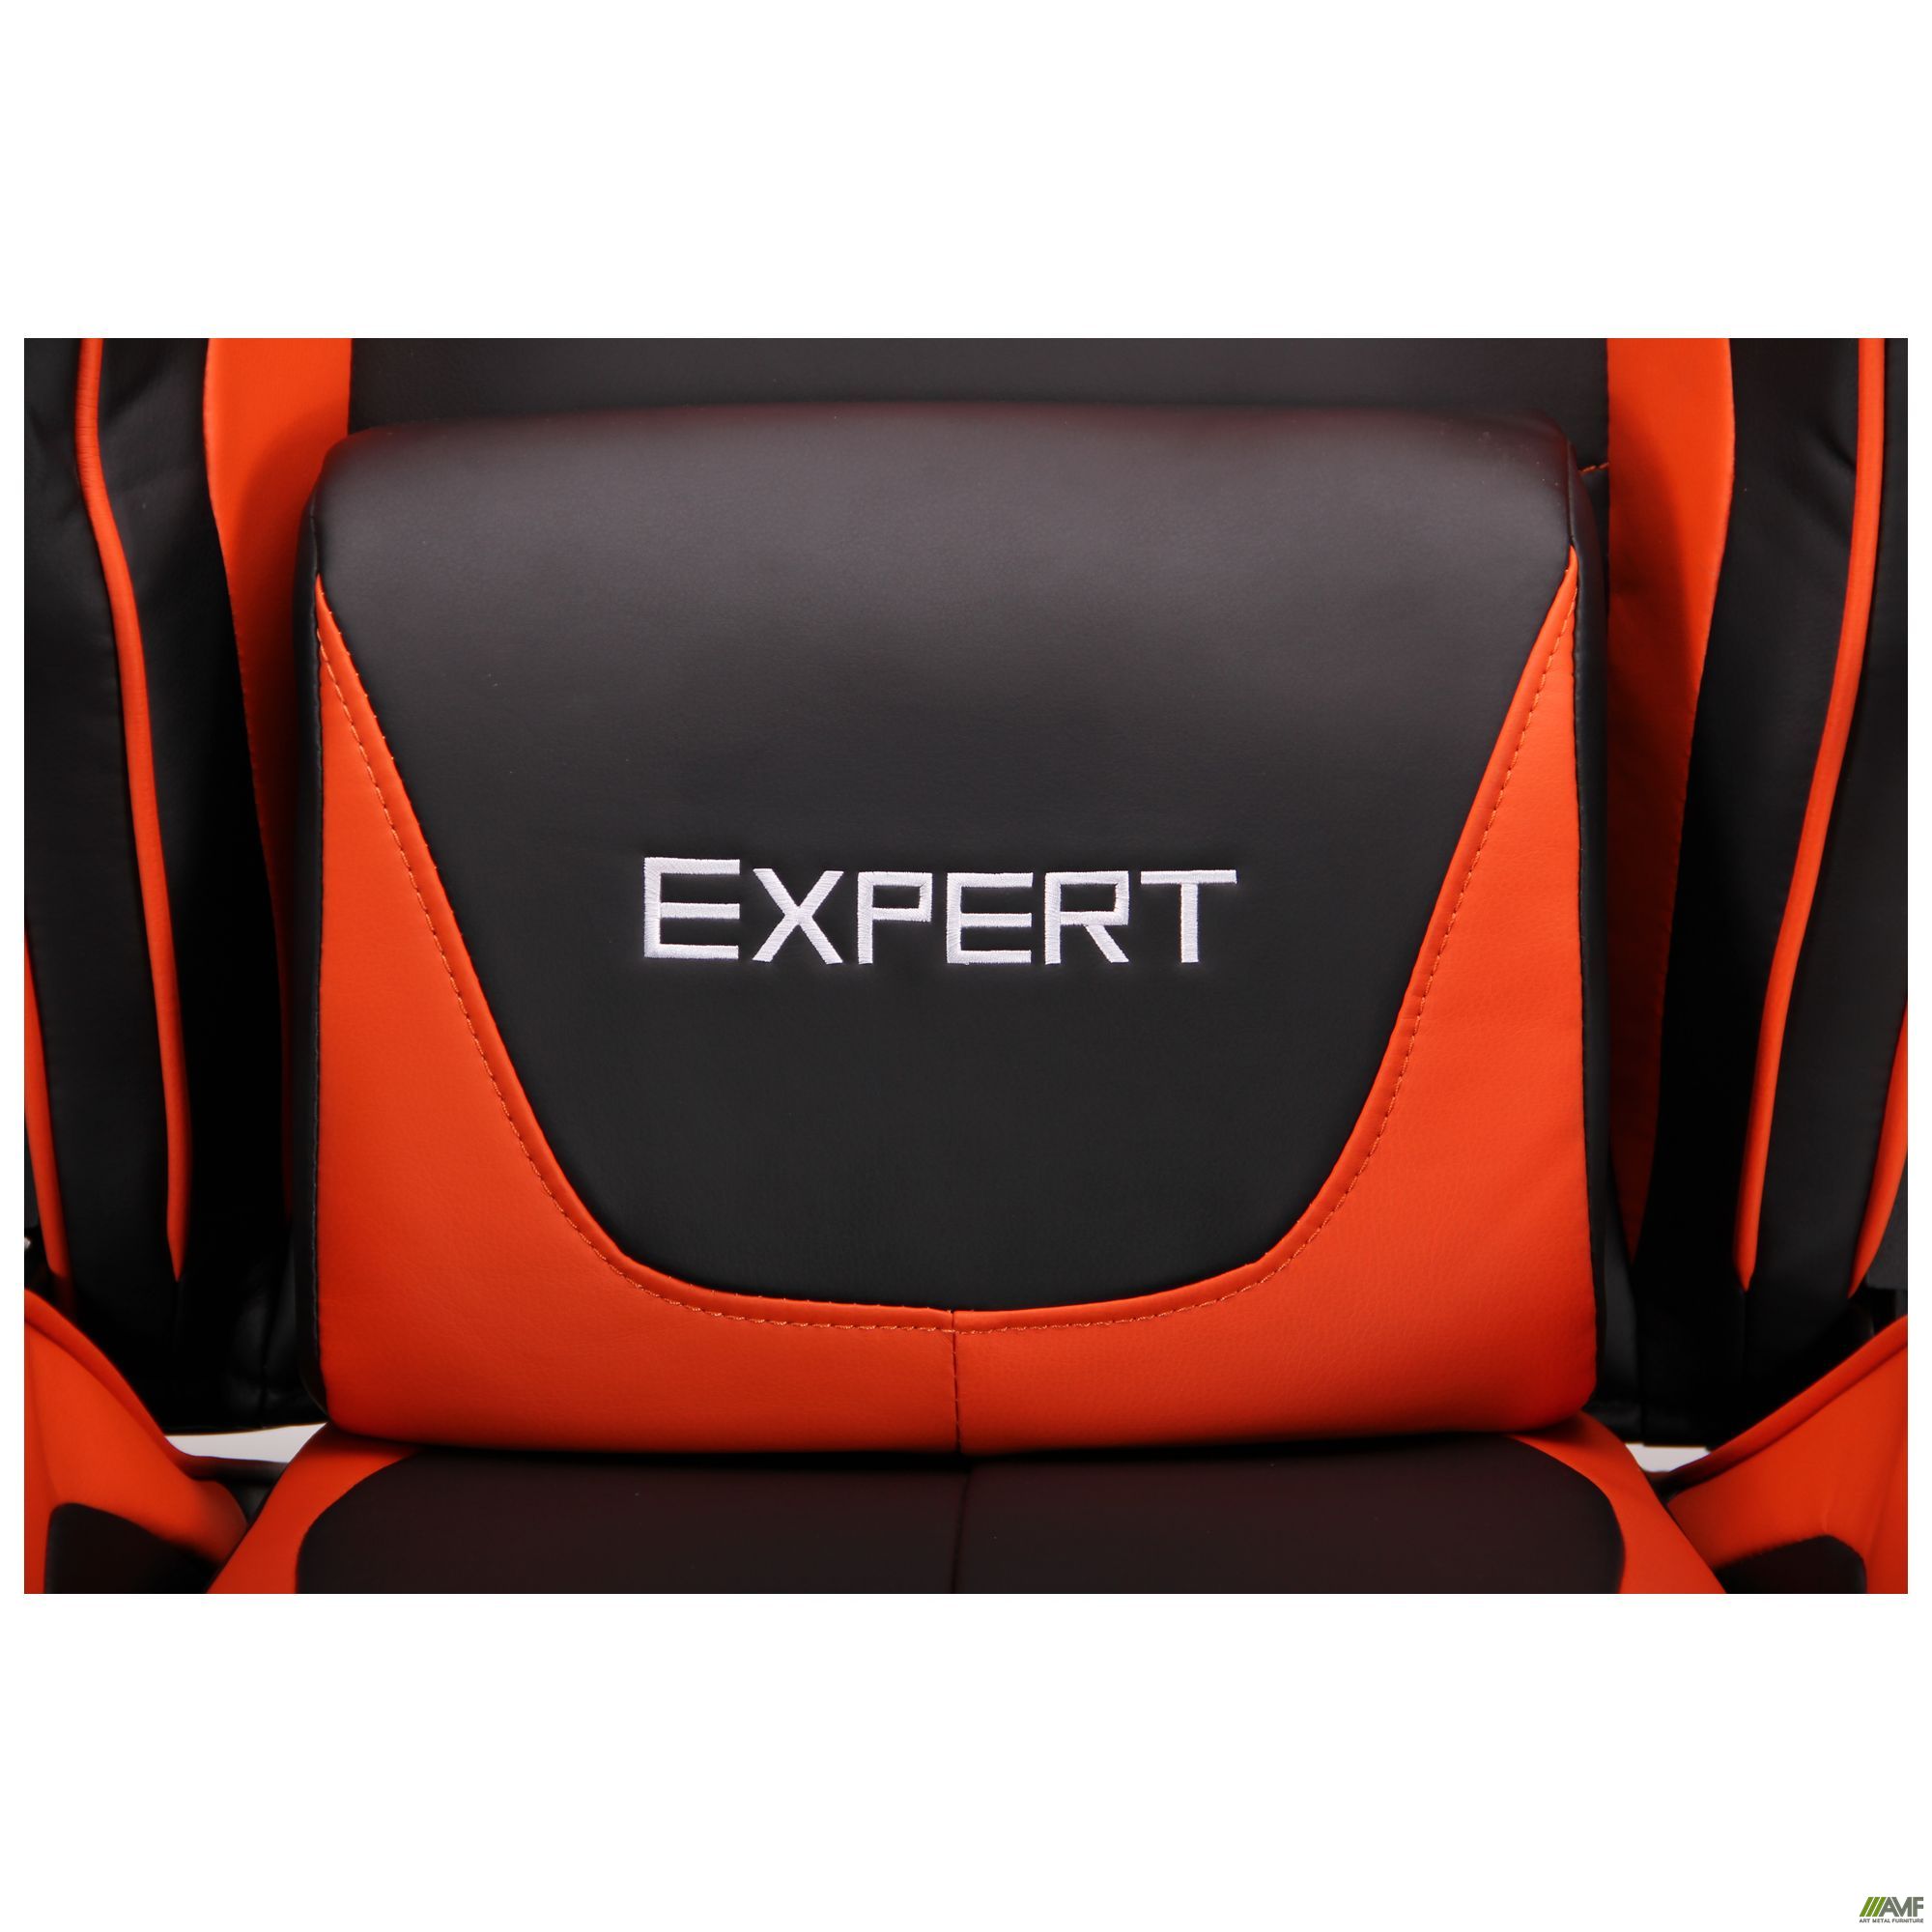 Фото 13 - Кресло VR Racer Expert Genius черный/оранжевый 